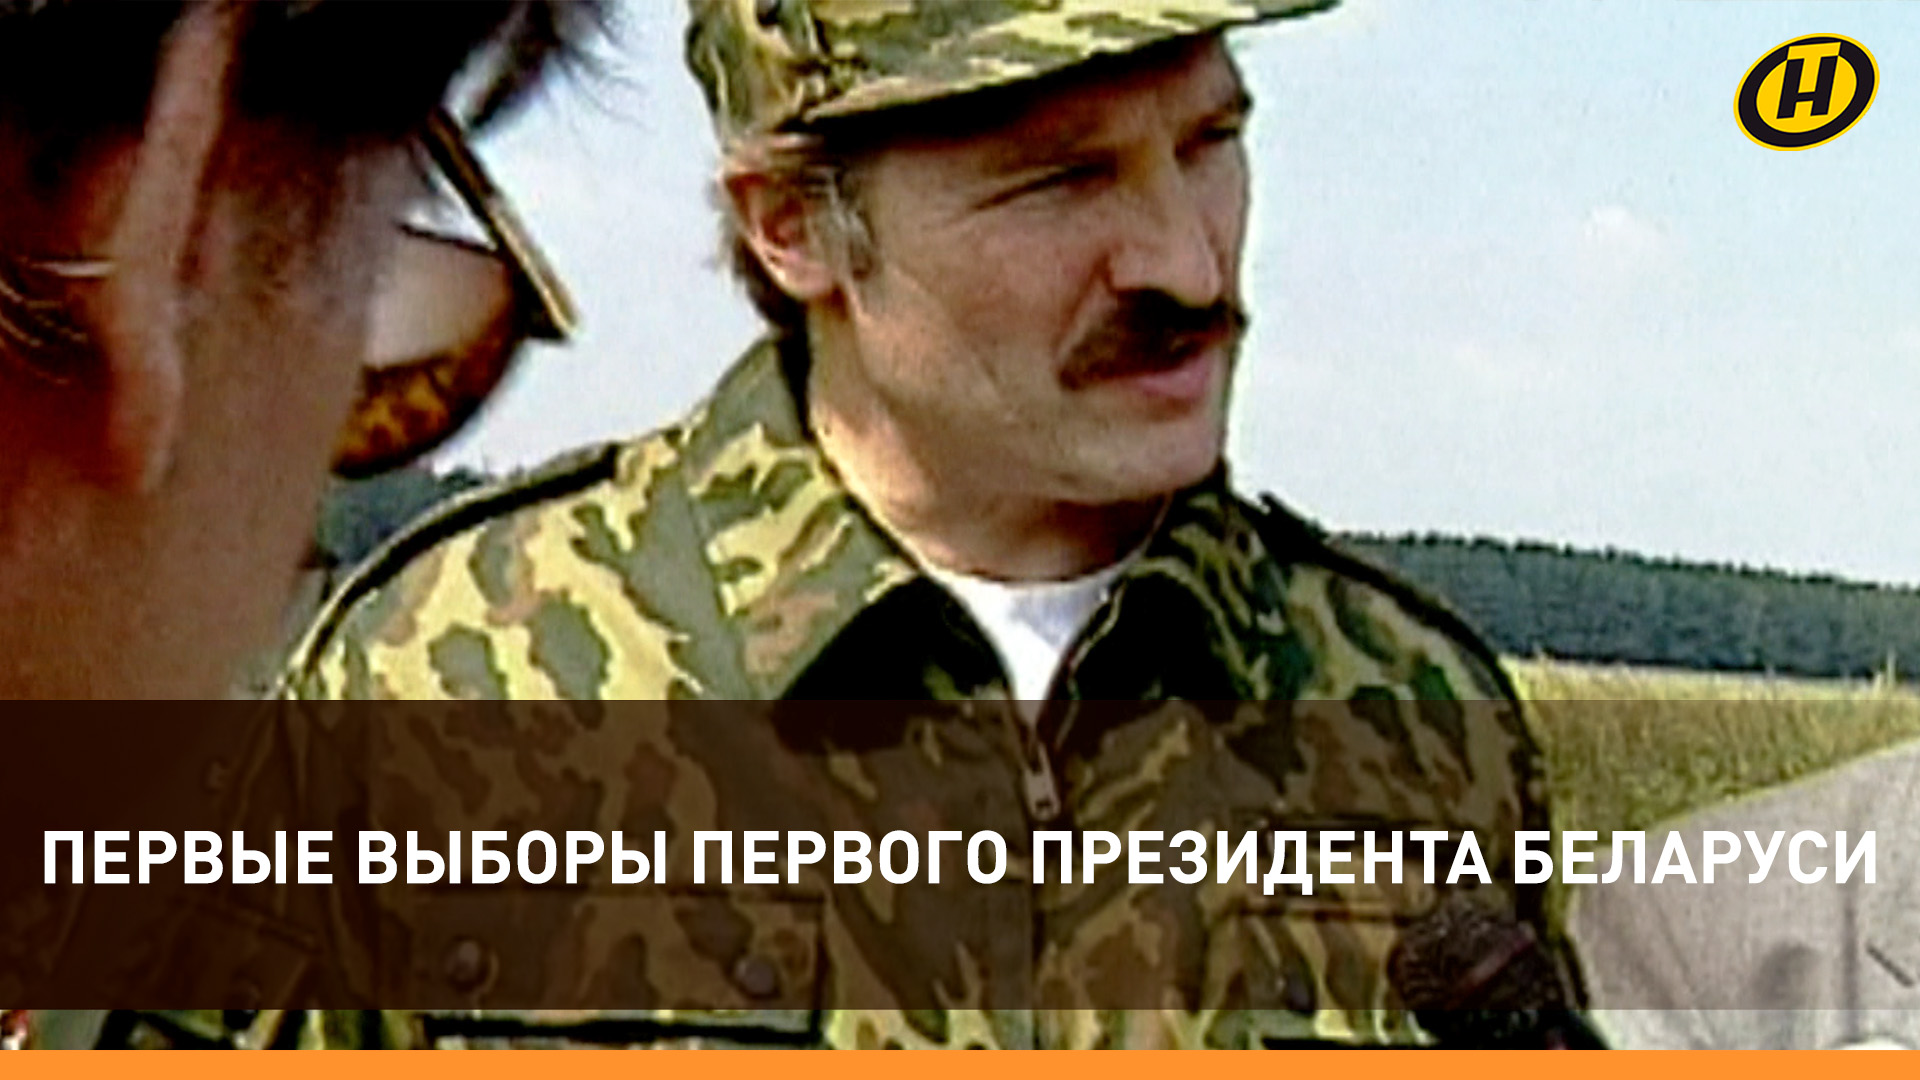 Беларусь ДО и ПОСЛЕ выборов 1994: как Президент Александр Лукашенко оправдал надежды народа